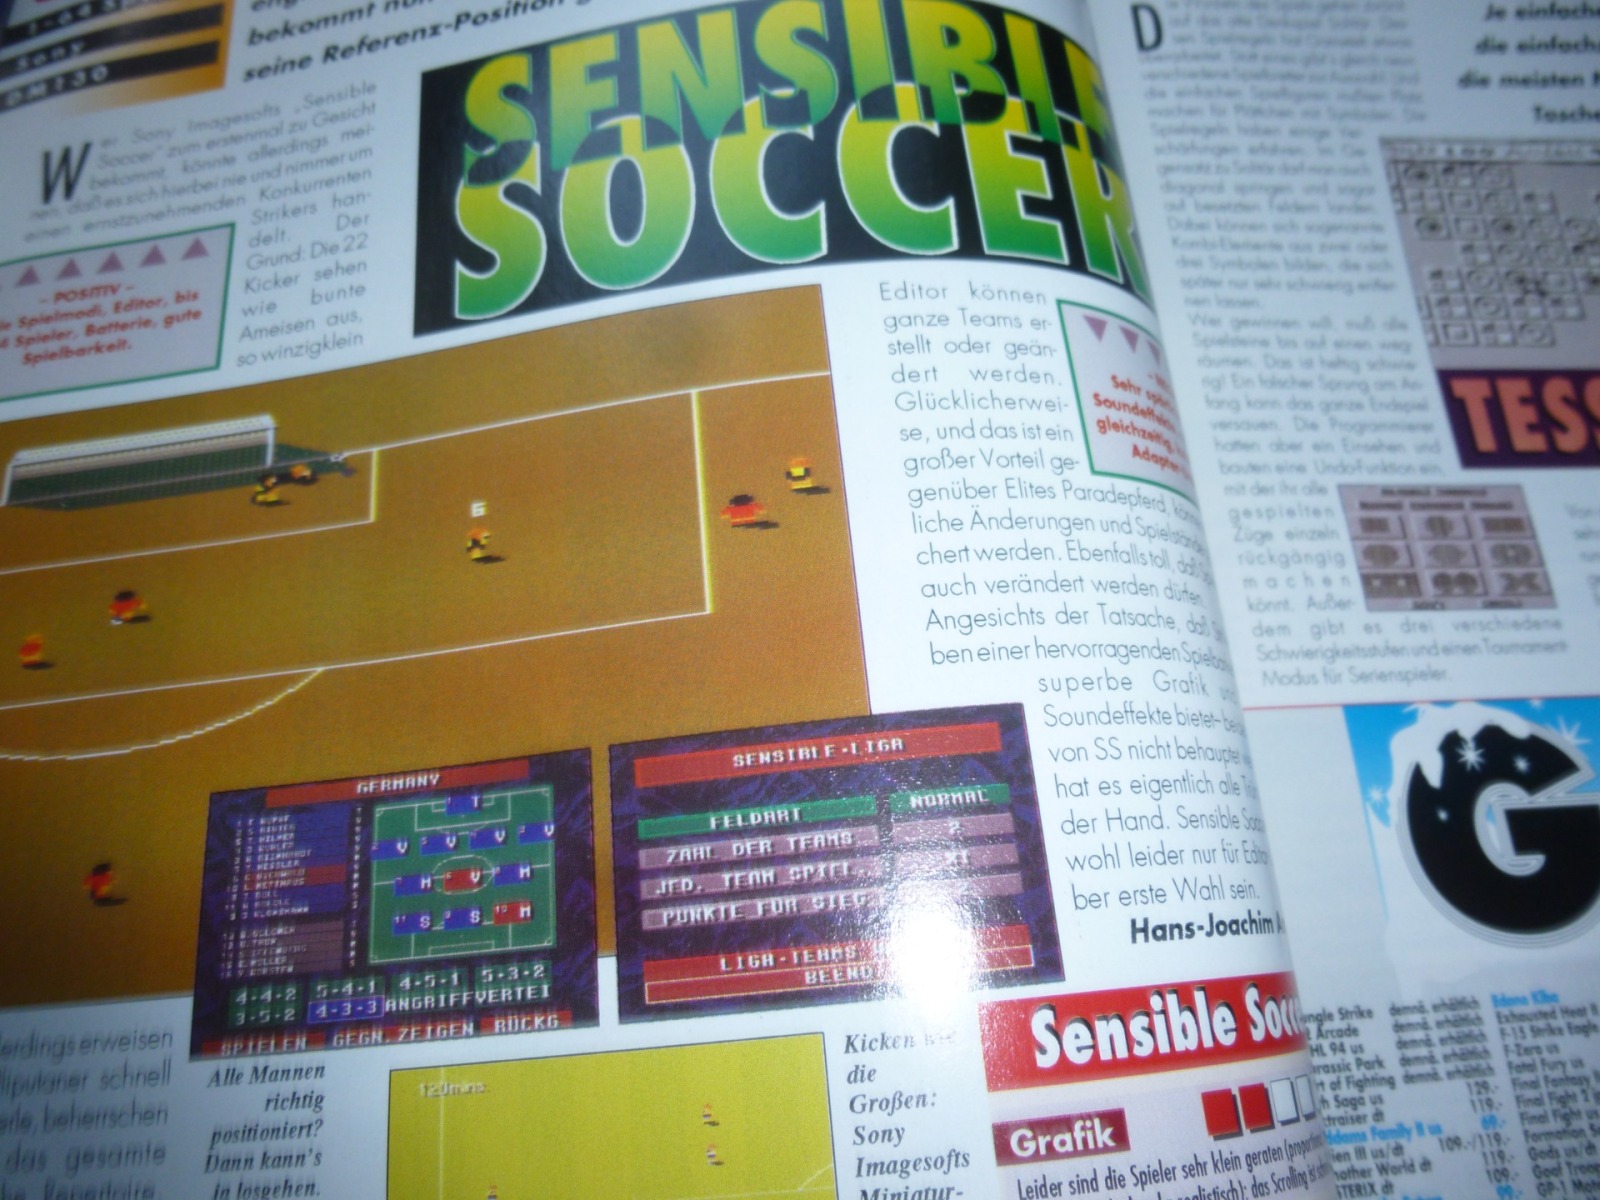 TOTAL Das unabhängige Magazin - 100 Nintendo - Ausgabe 12/93 1993 7